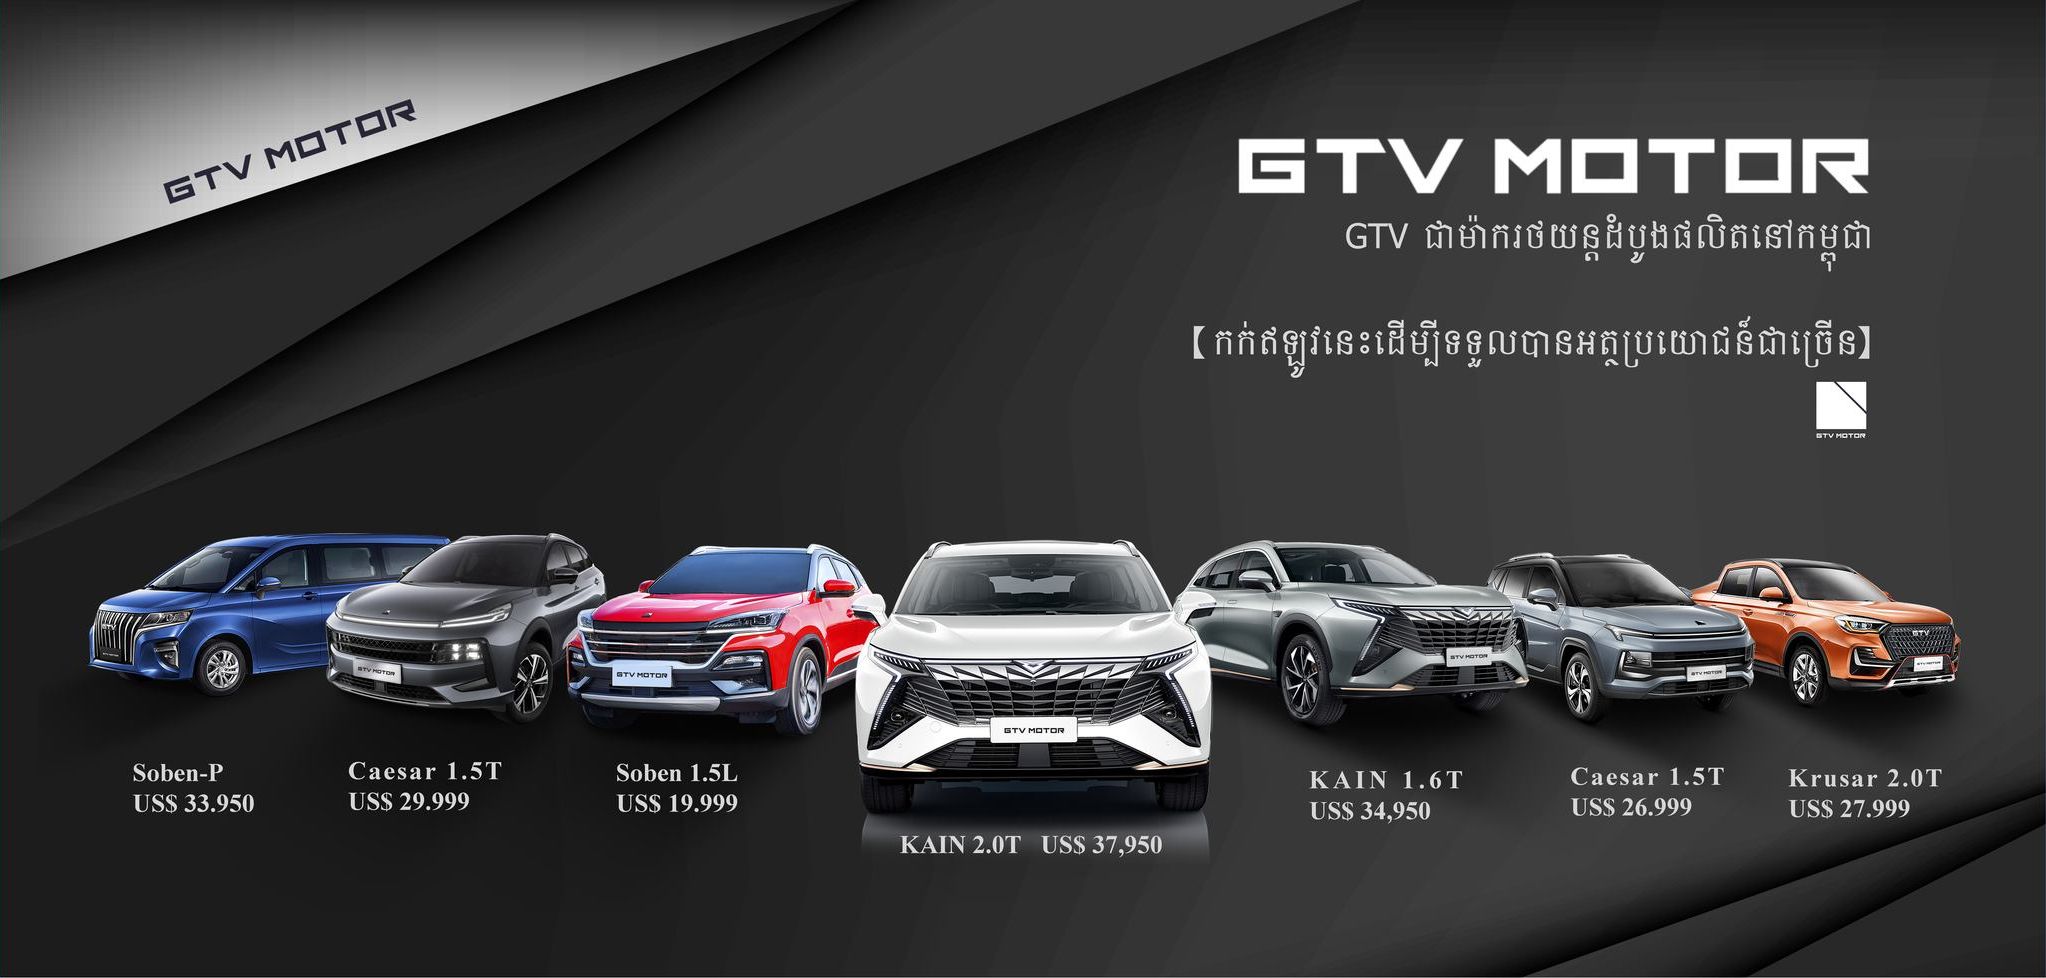 GTV-Motor_model-range_BM